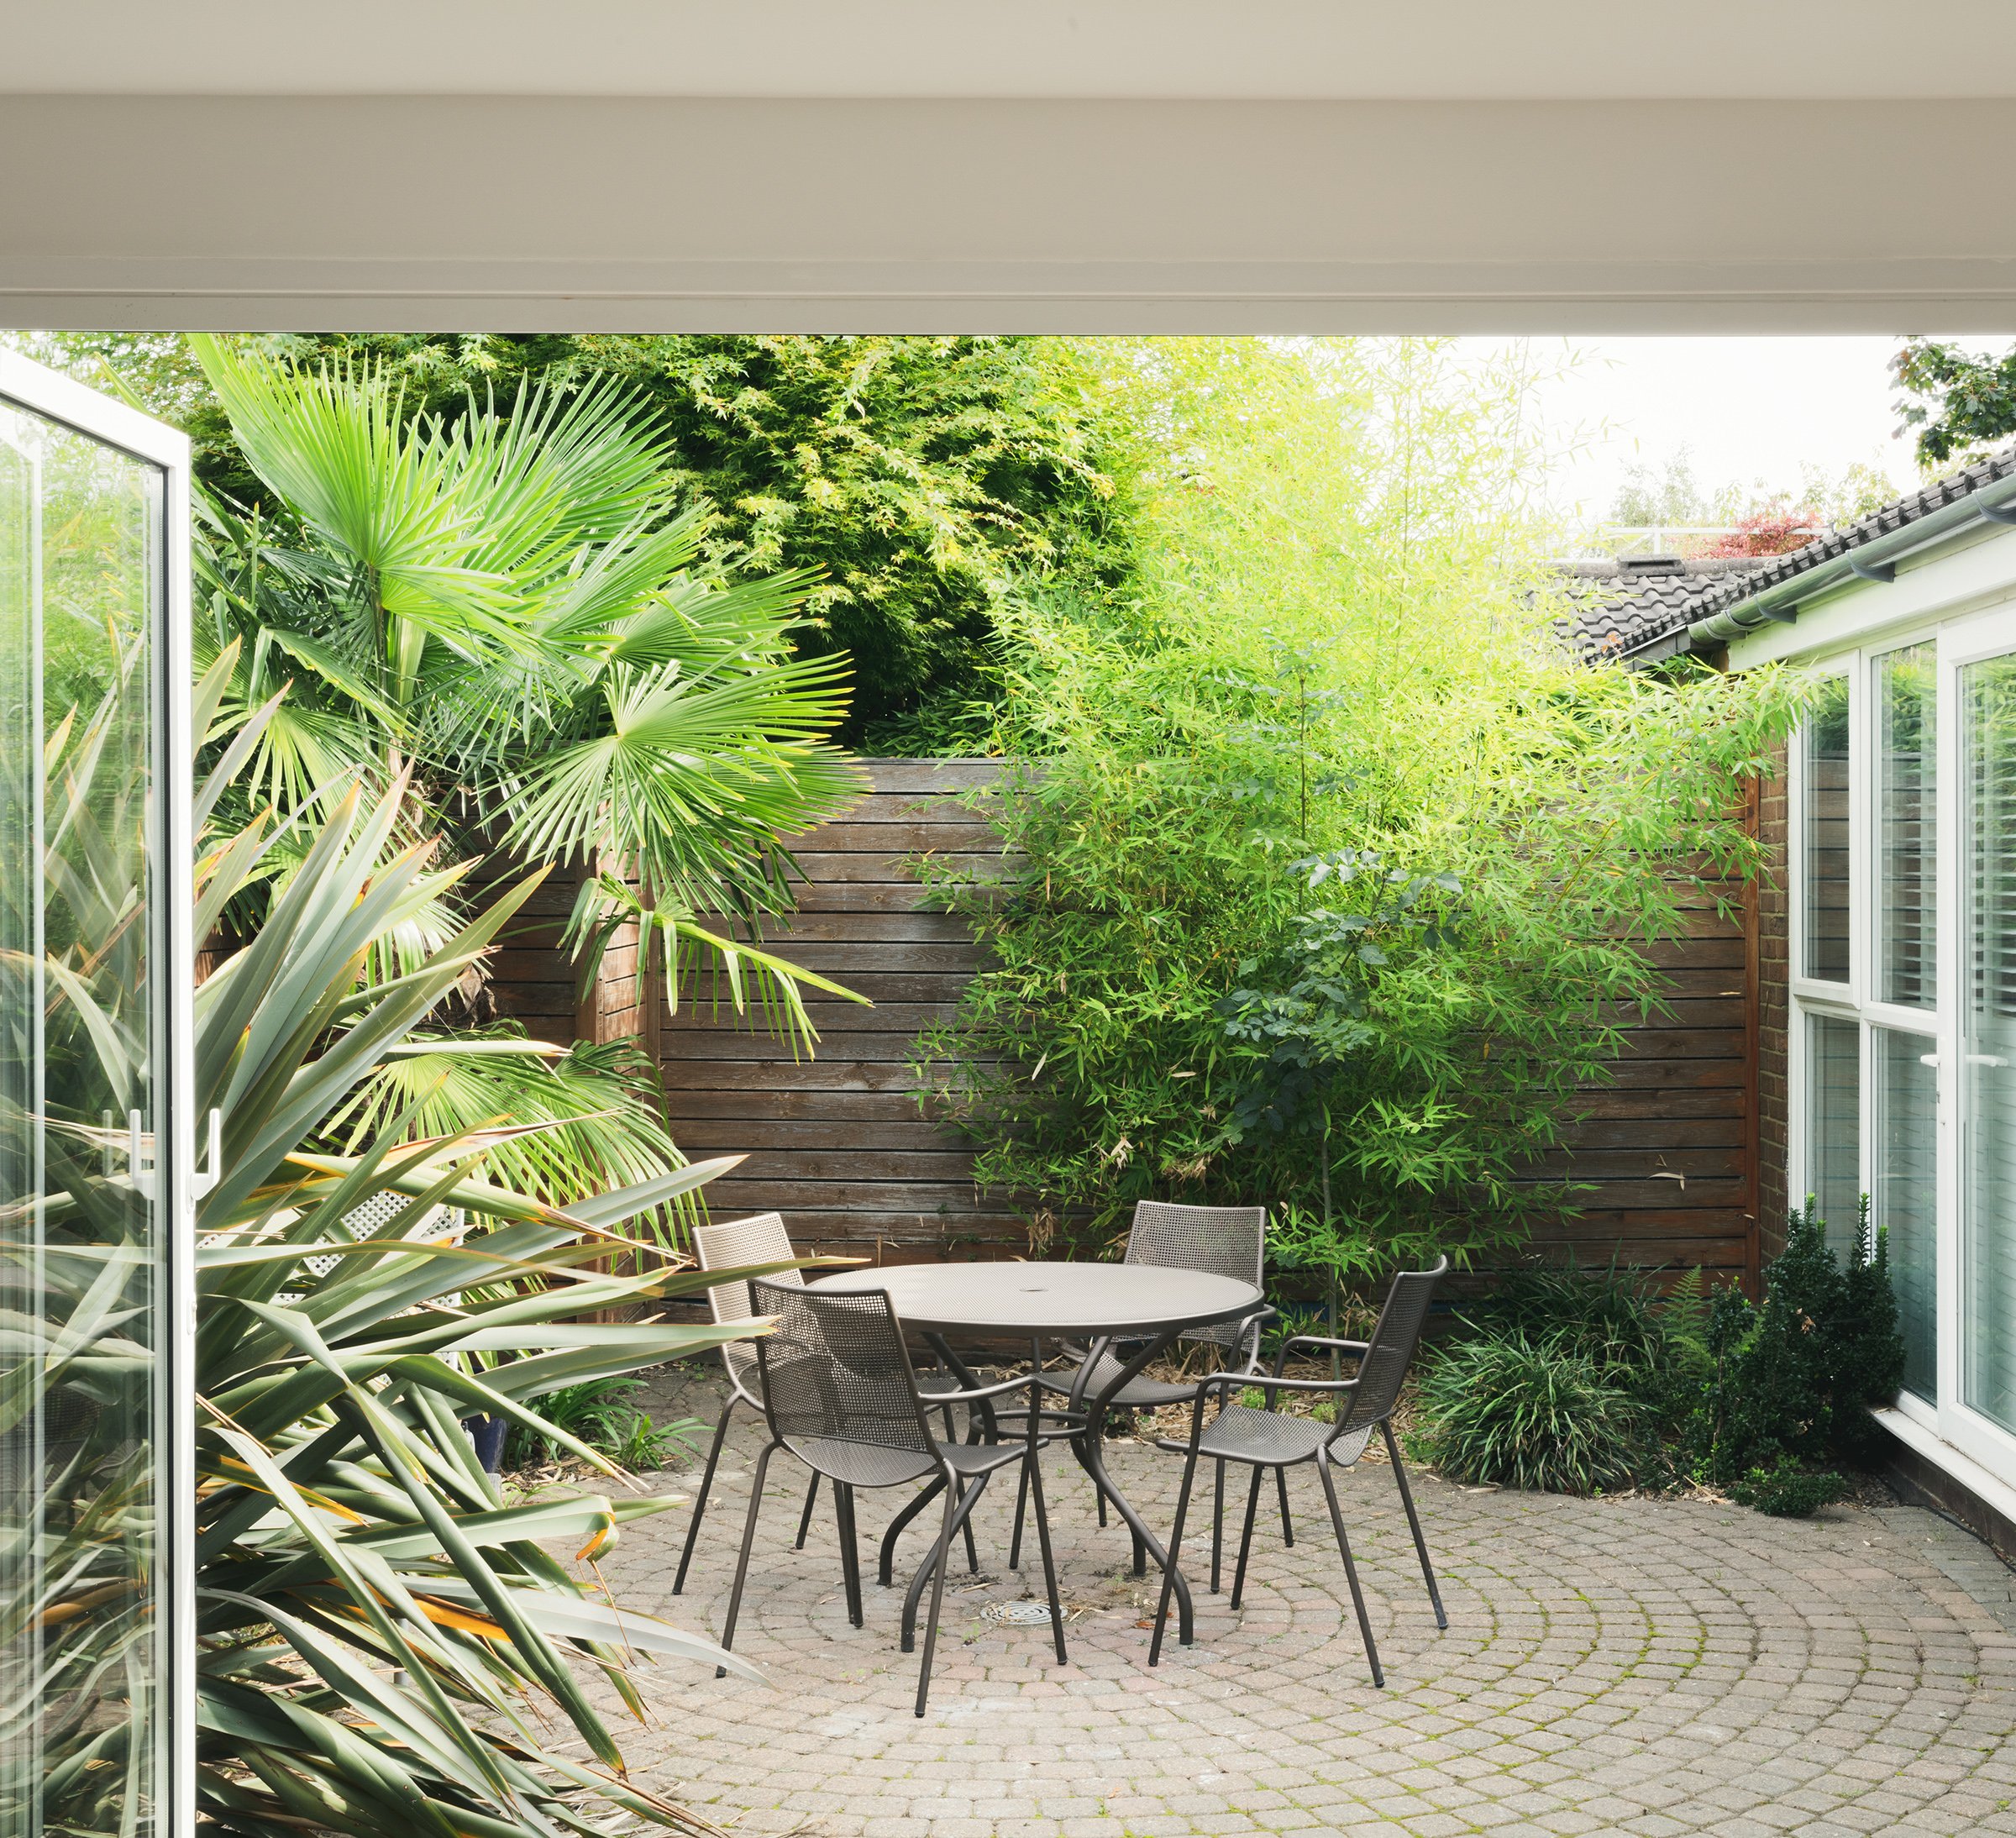 11-dulwich-bungalow-house-courtyard-garden-interior-design-architecture-london-uk-rider-stirland-architects.jpg